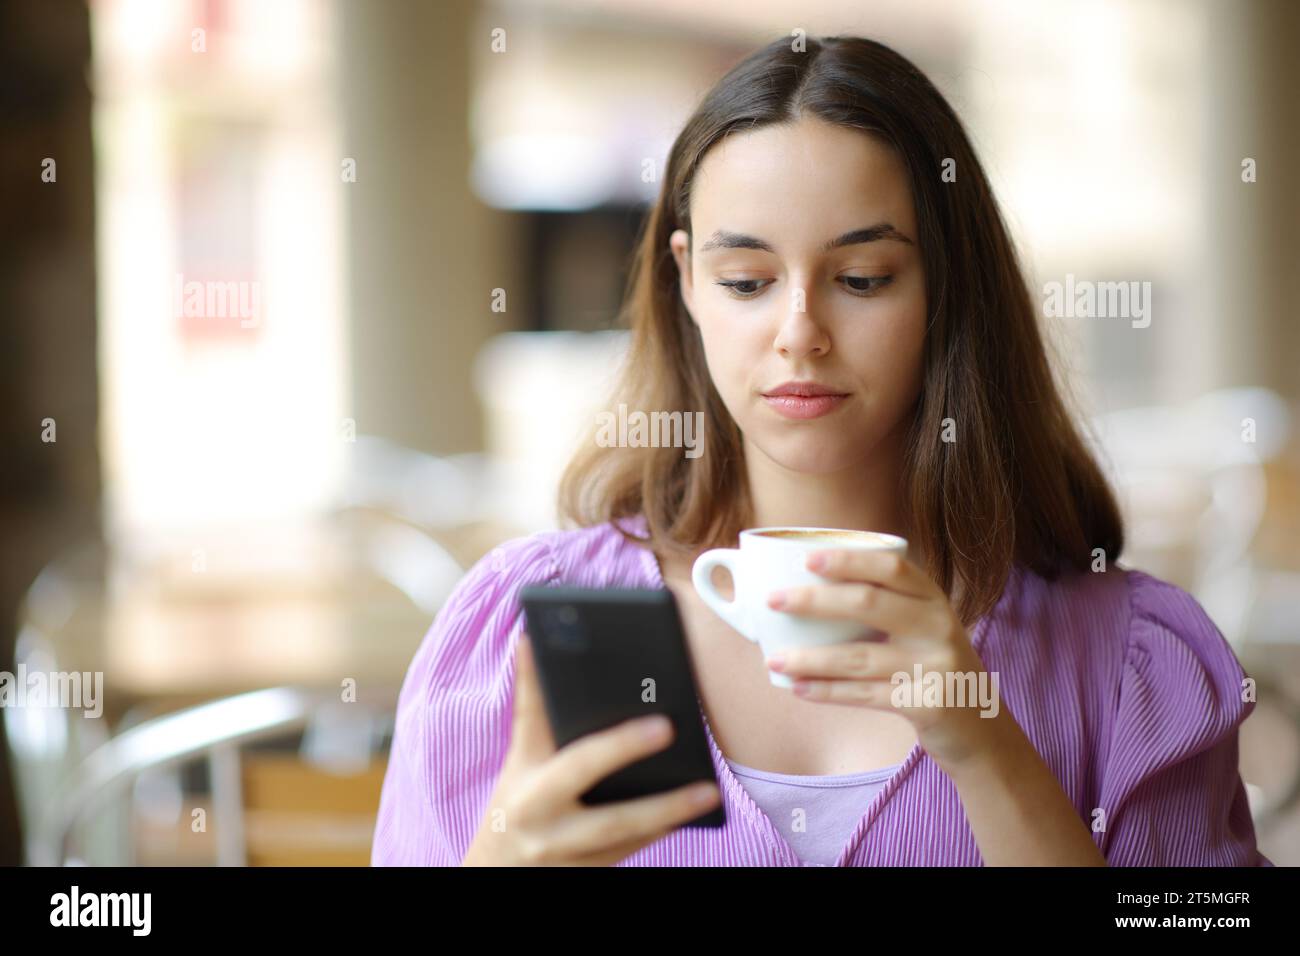 Ritratto frontale di una donna seria che controlla il telefono mentre beve in una terrazza del bar Foto Stock